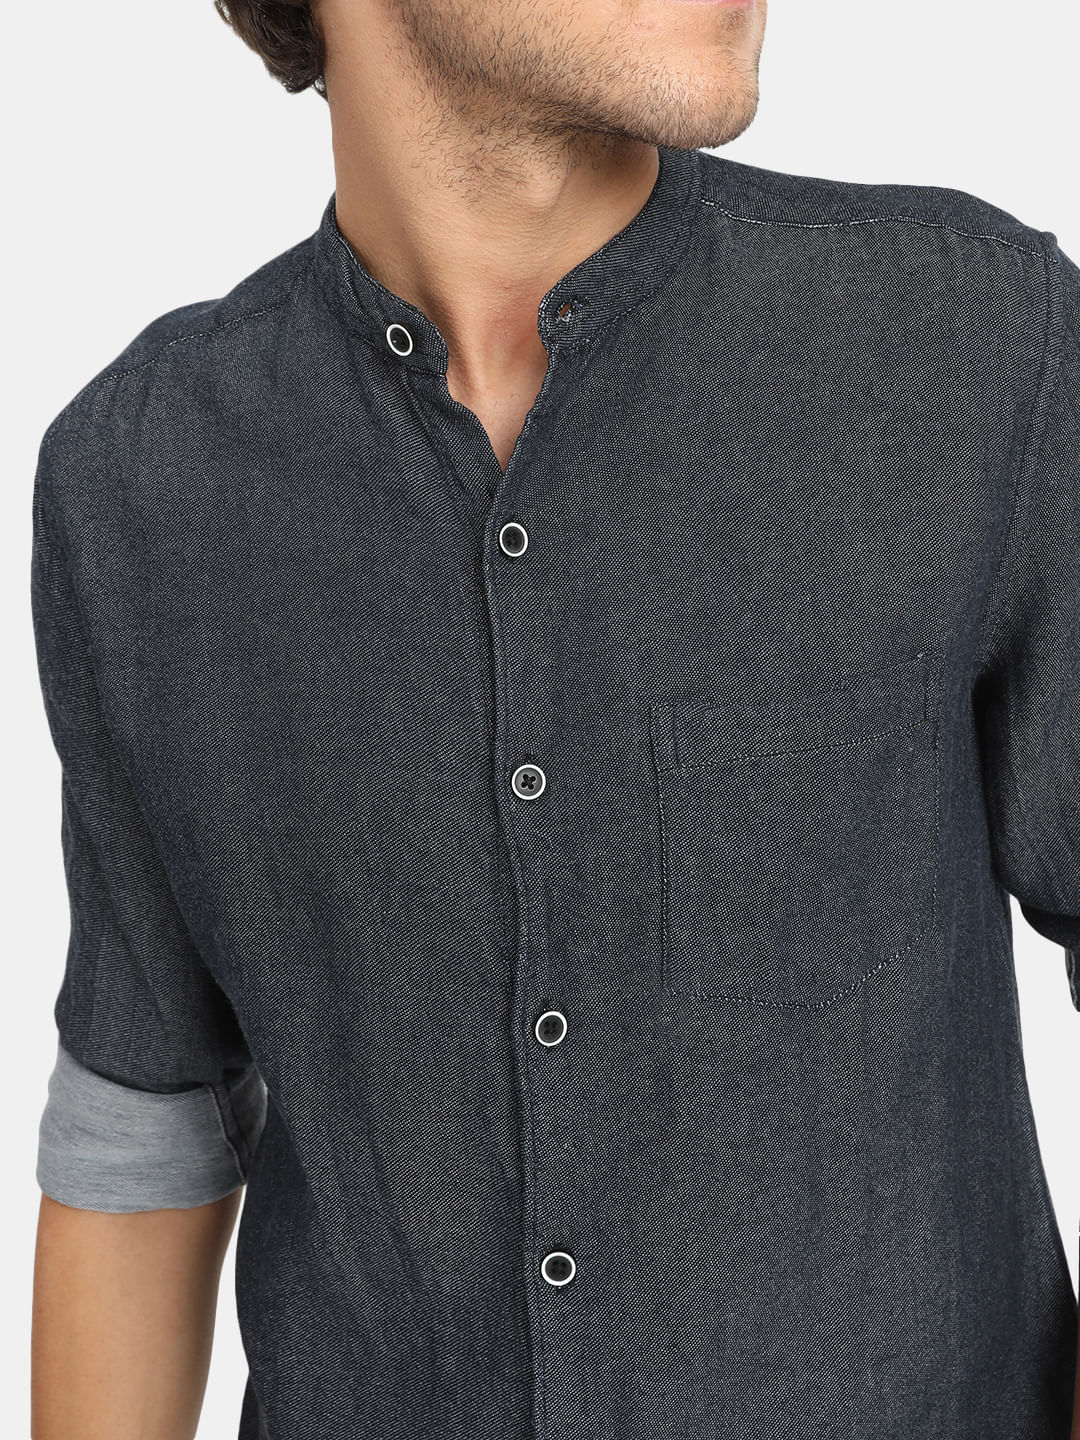 Buy Washed Denim Men's Jeans Shirt Online | Tistabene - Tistabene